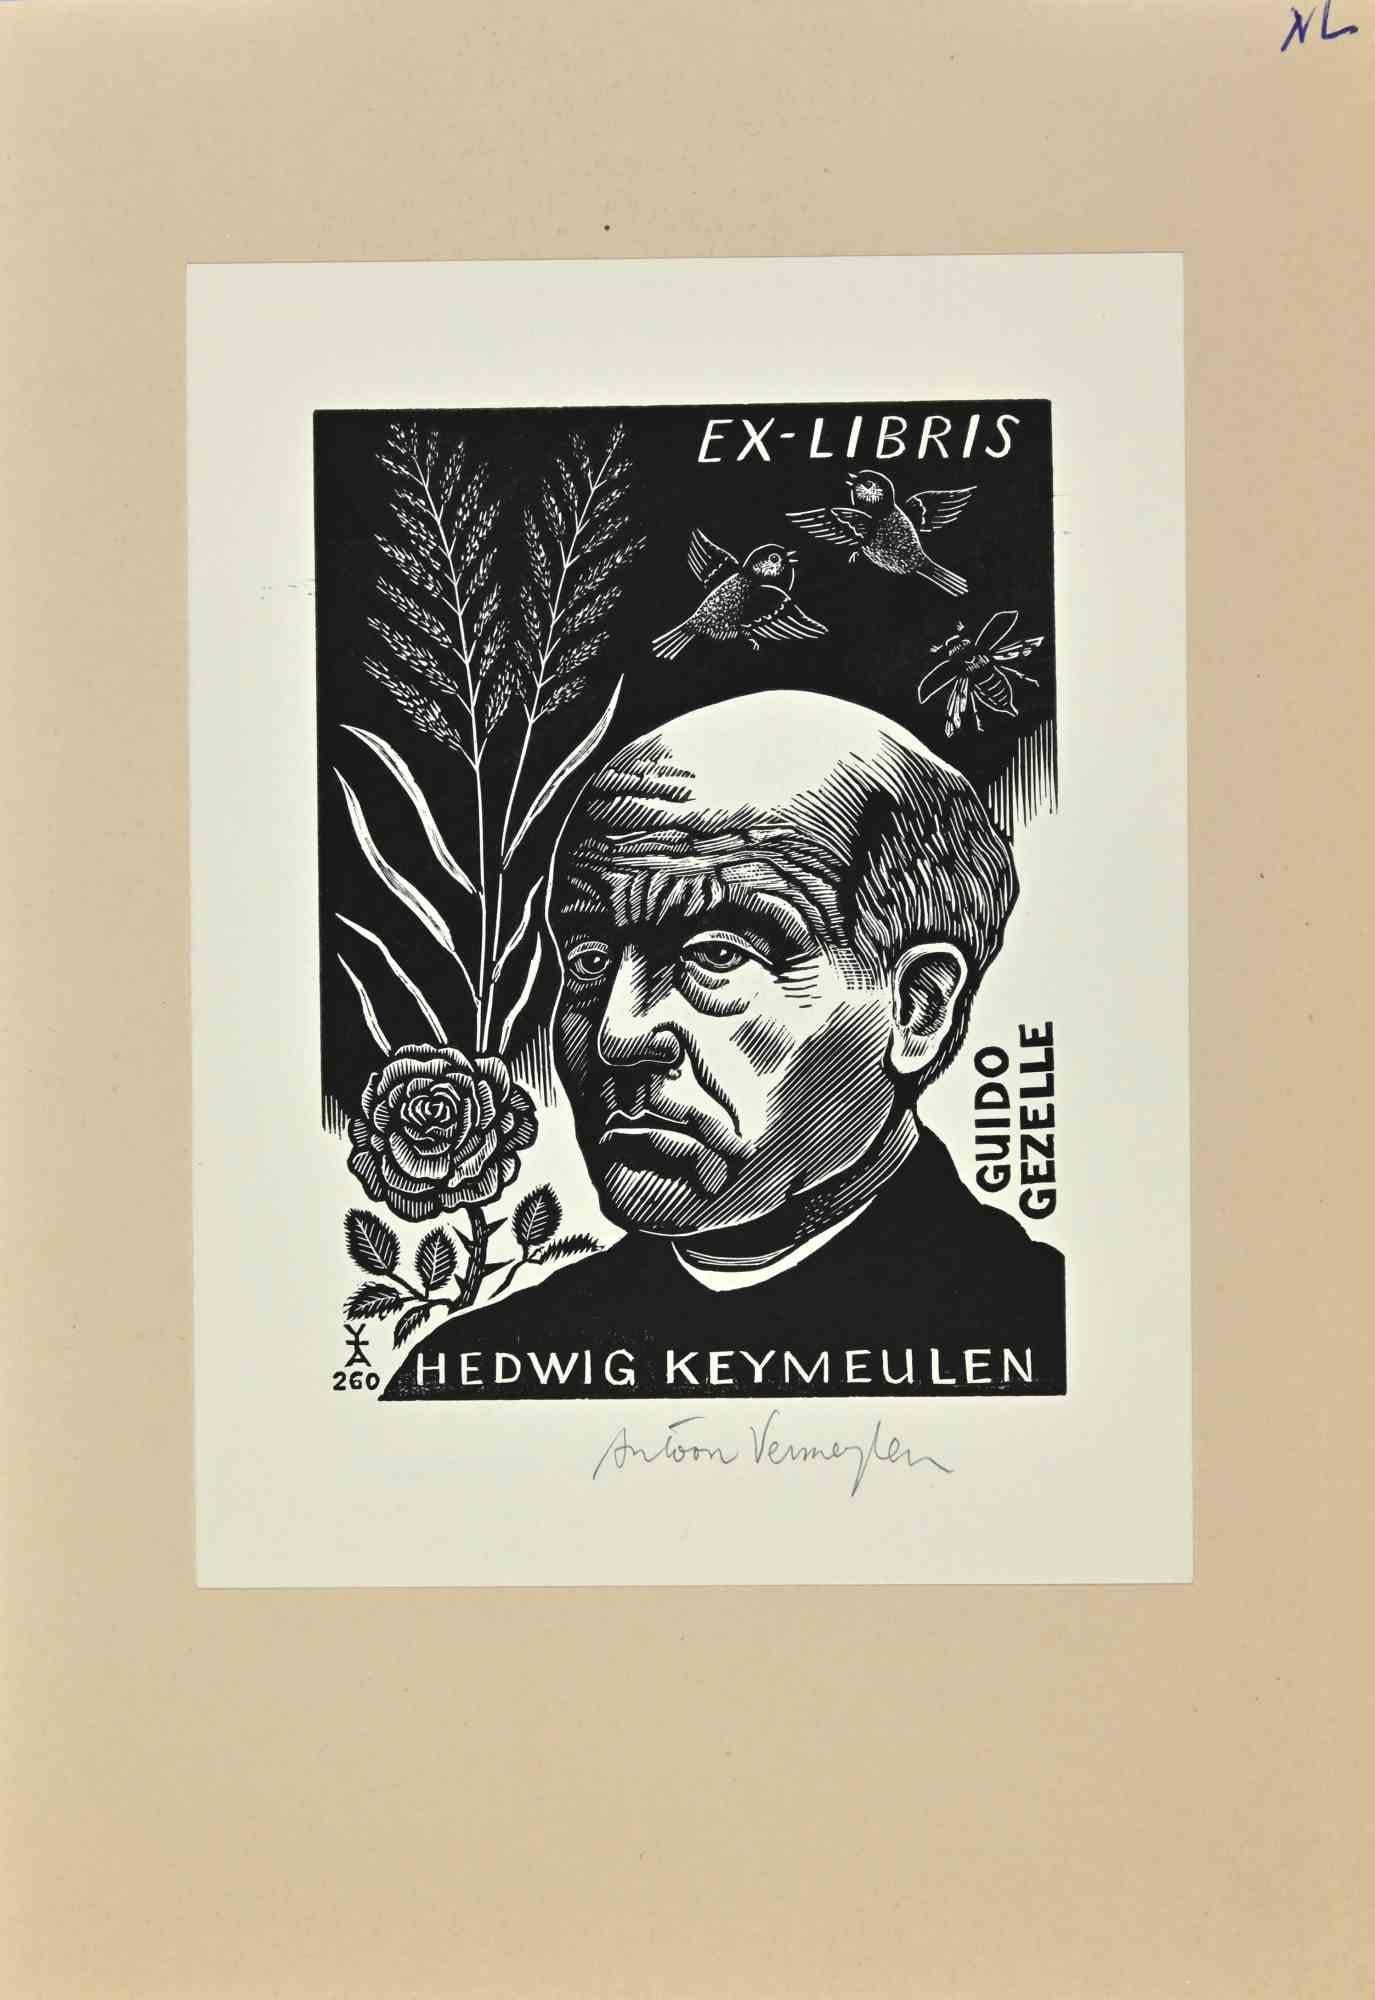 Ex-Libris Hedwig Keymeulen ist ein Kunstwerk des belgischen Künstlers Antoon Vermeylen aus dem Jahr 2001. 

Holzschnitt B./W. Druck auf Papier. Handsigniert am rechten Rand. Das Werk ist aufgeklebt  Pappe. 

Abmessungen insgesamt: 20 x 14